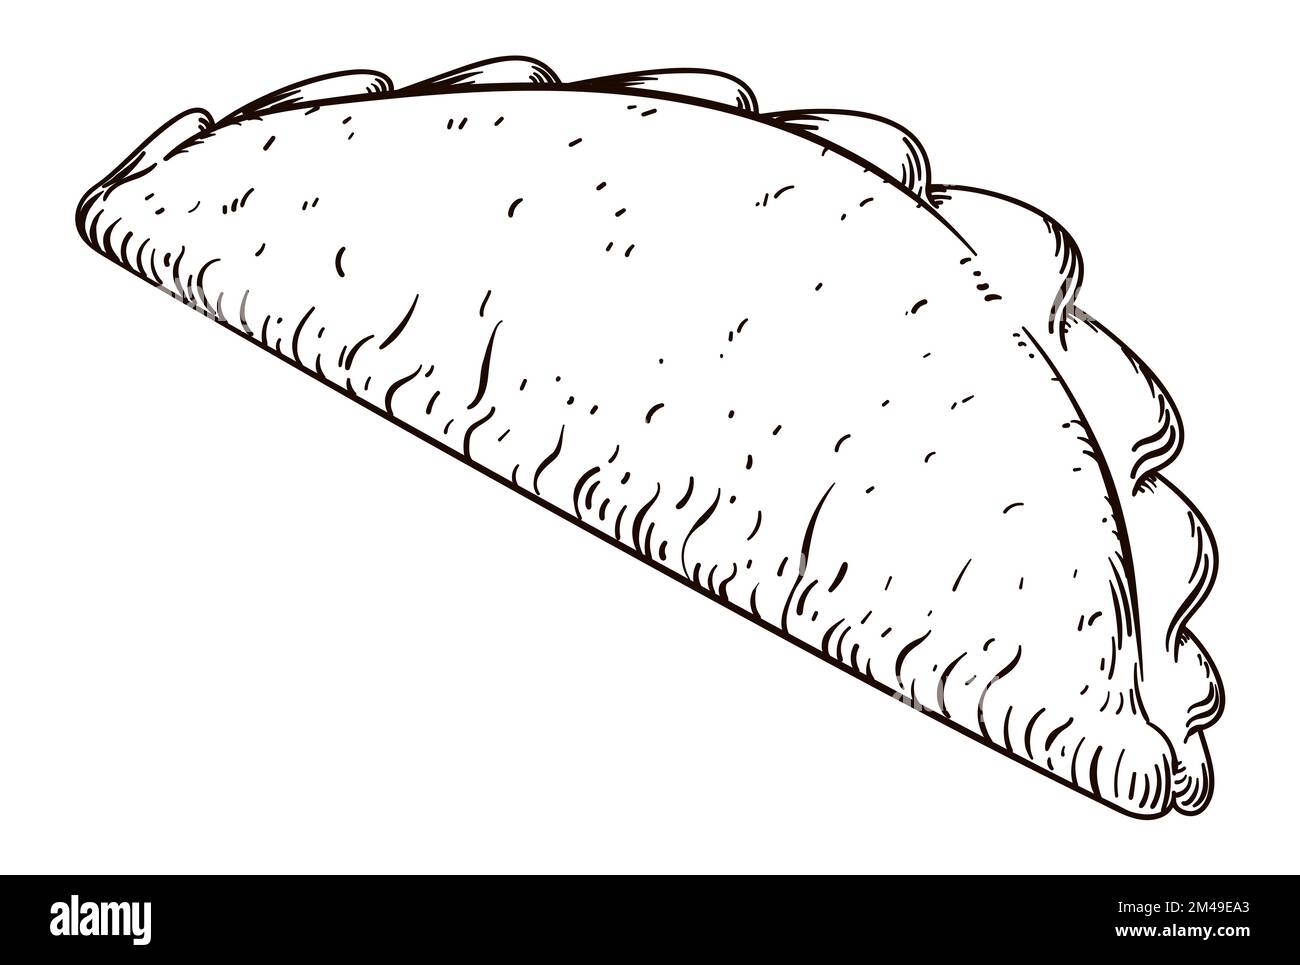 Vue savoureuse sur une empanada de style dessiné à la main, isolée sur fond blanc. Illustration de Vecteur